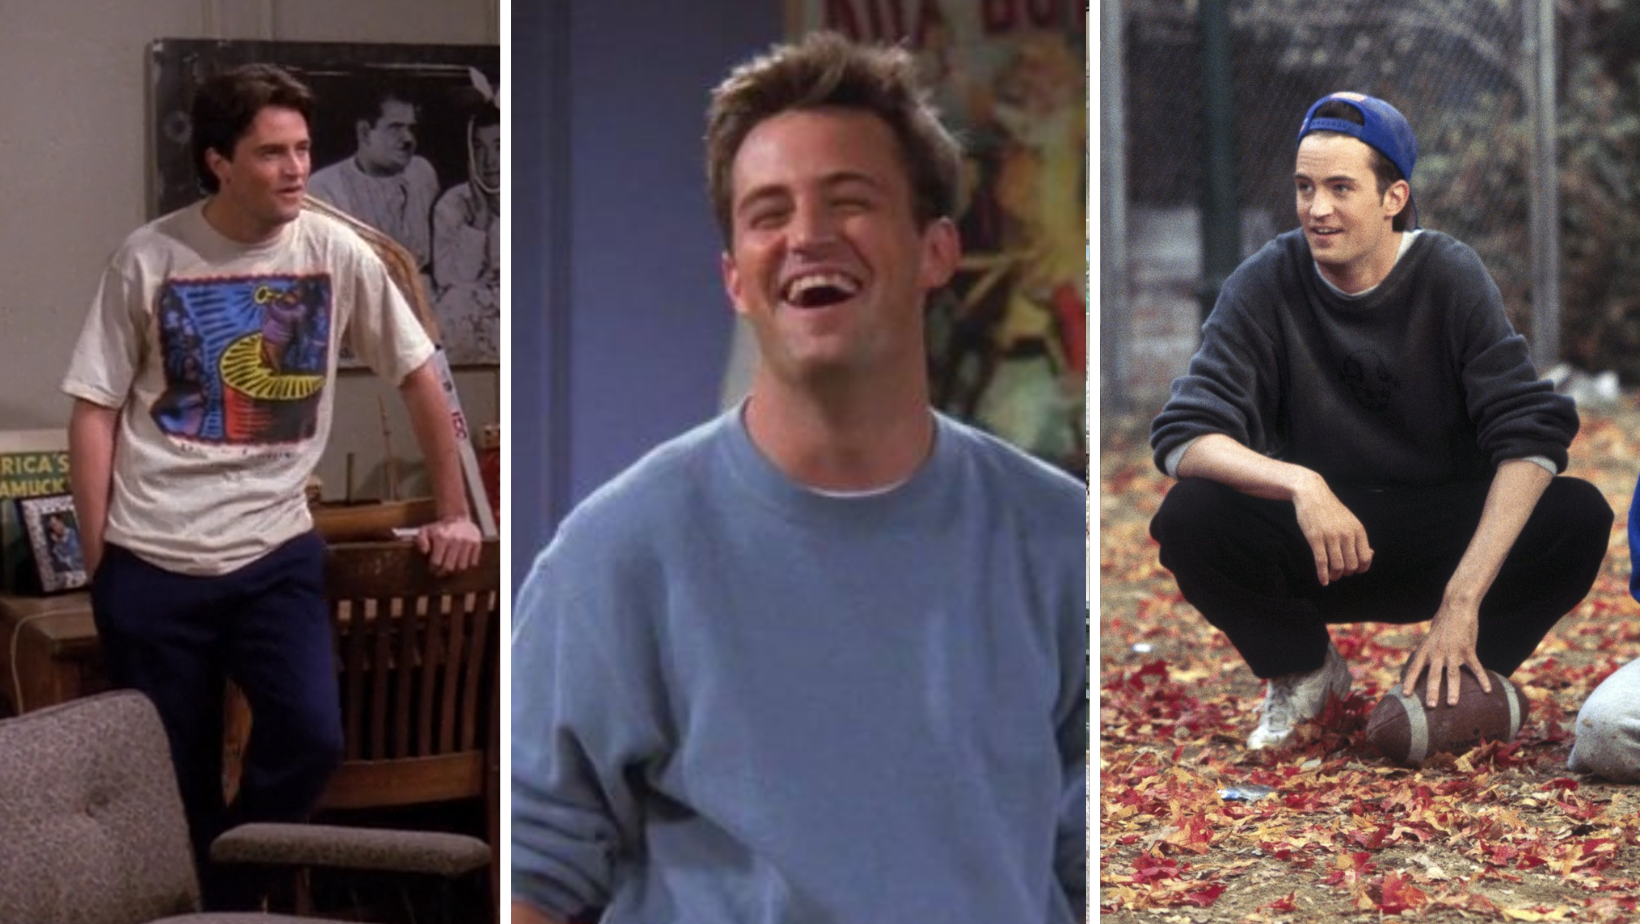 Prisjetili smo se najupečatljivijih trenutaka Matthewa Perryja kao Chandlera u Prijateljima